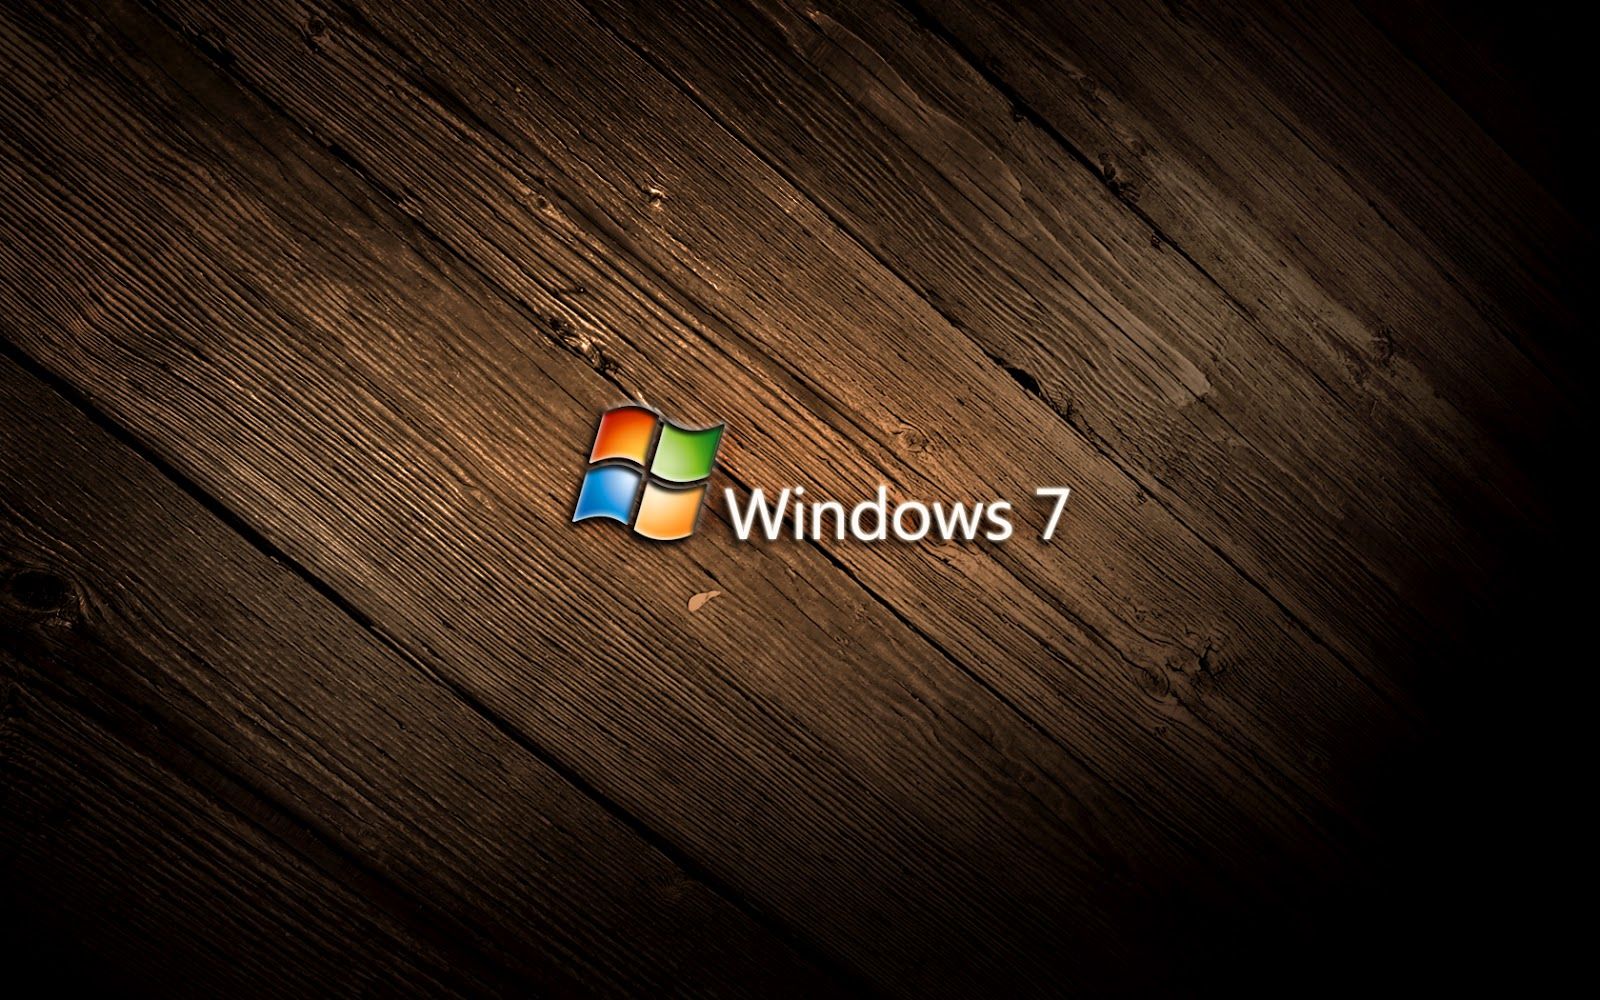 Window 7 Desktop Background - HD Wallpapers Pretty